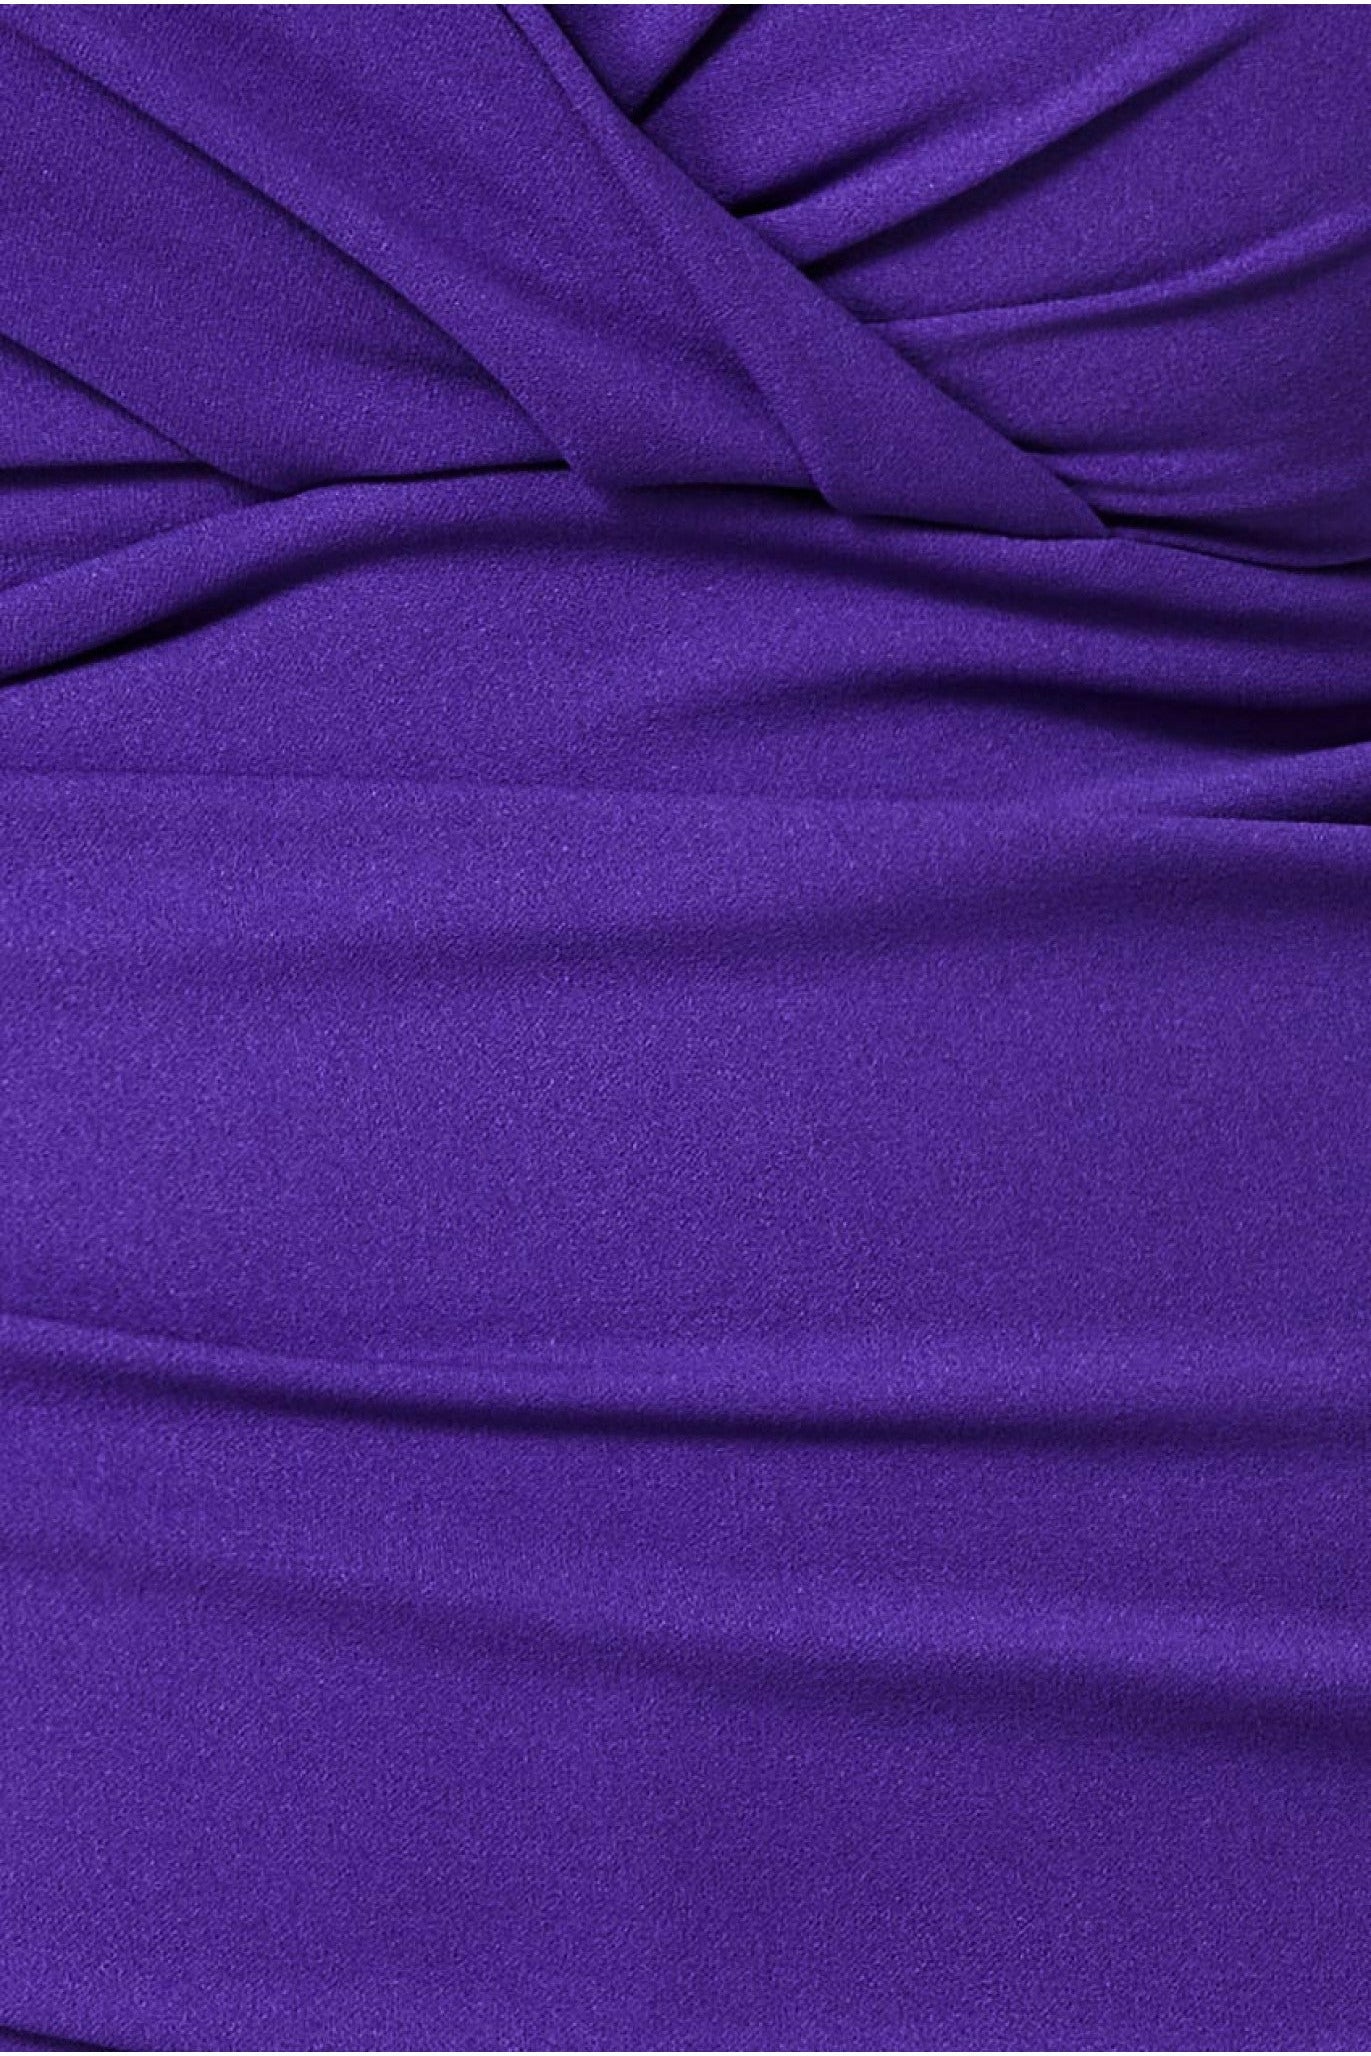 Bardot Scuba Jumpsuit - Purple TR113P